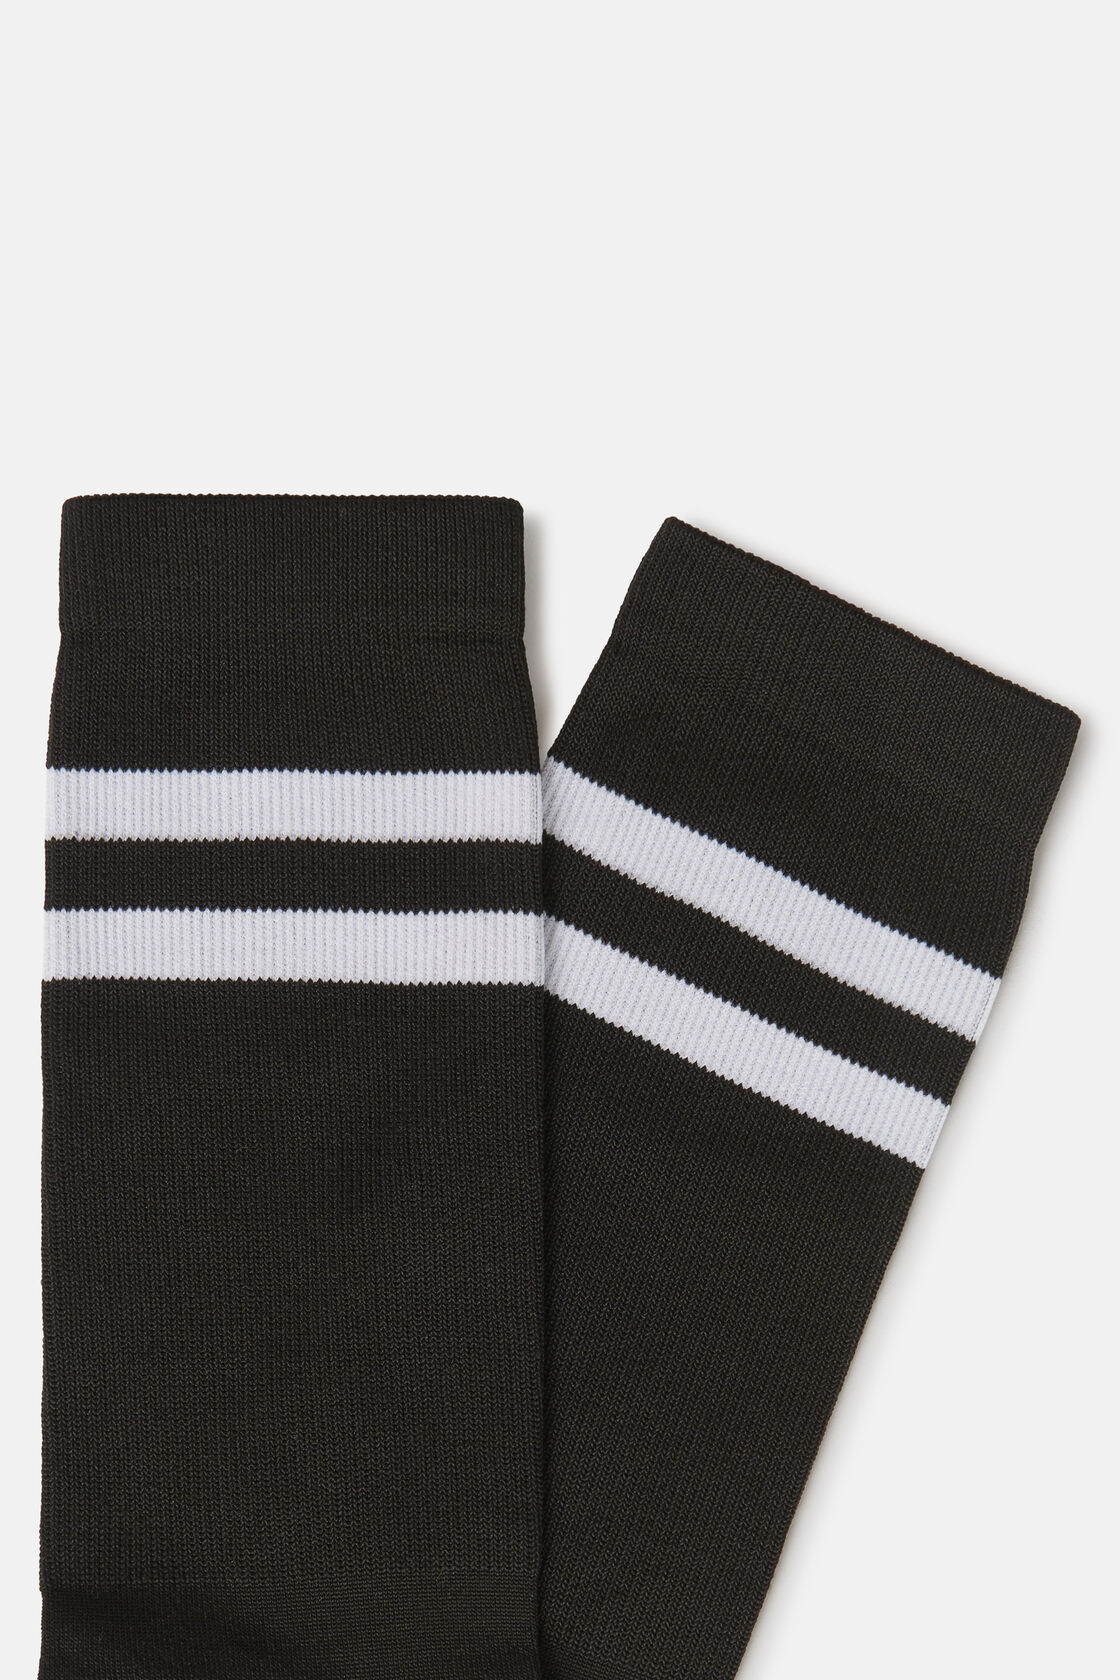 Chaussettes de sport en fil technique, Noir - Blanc, hi-res